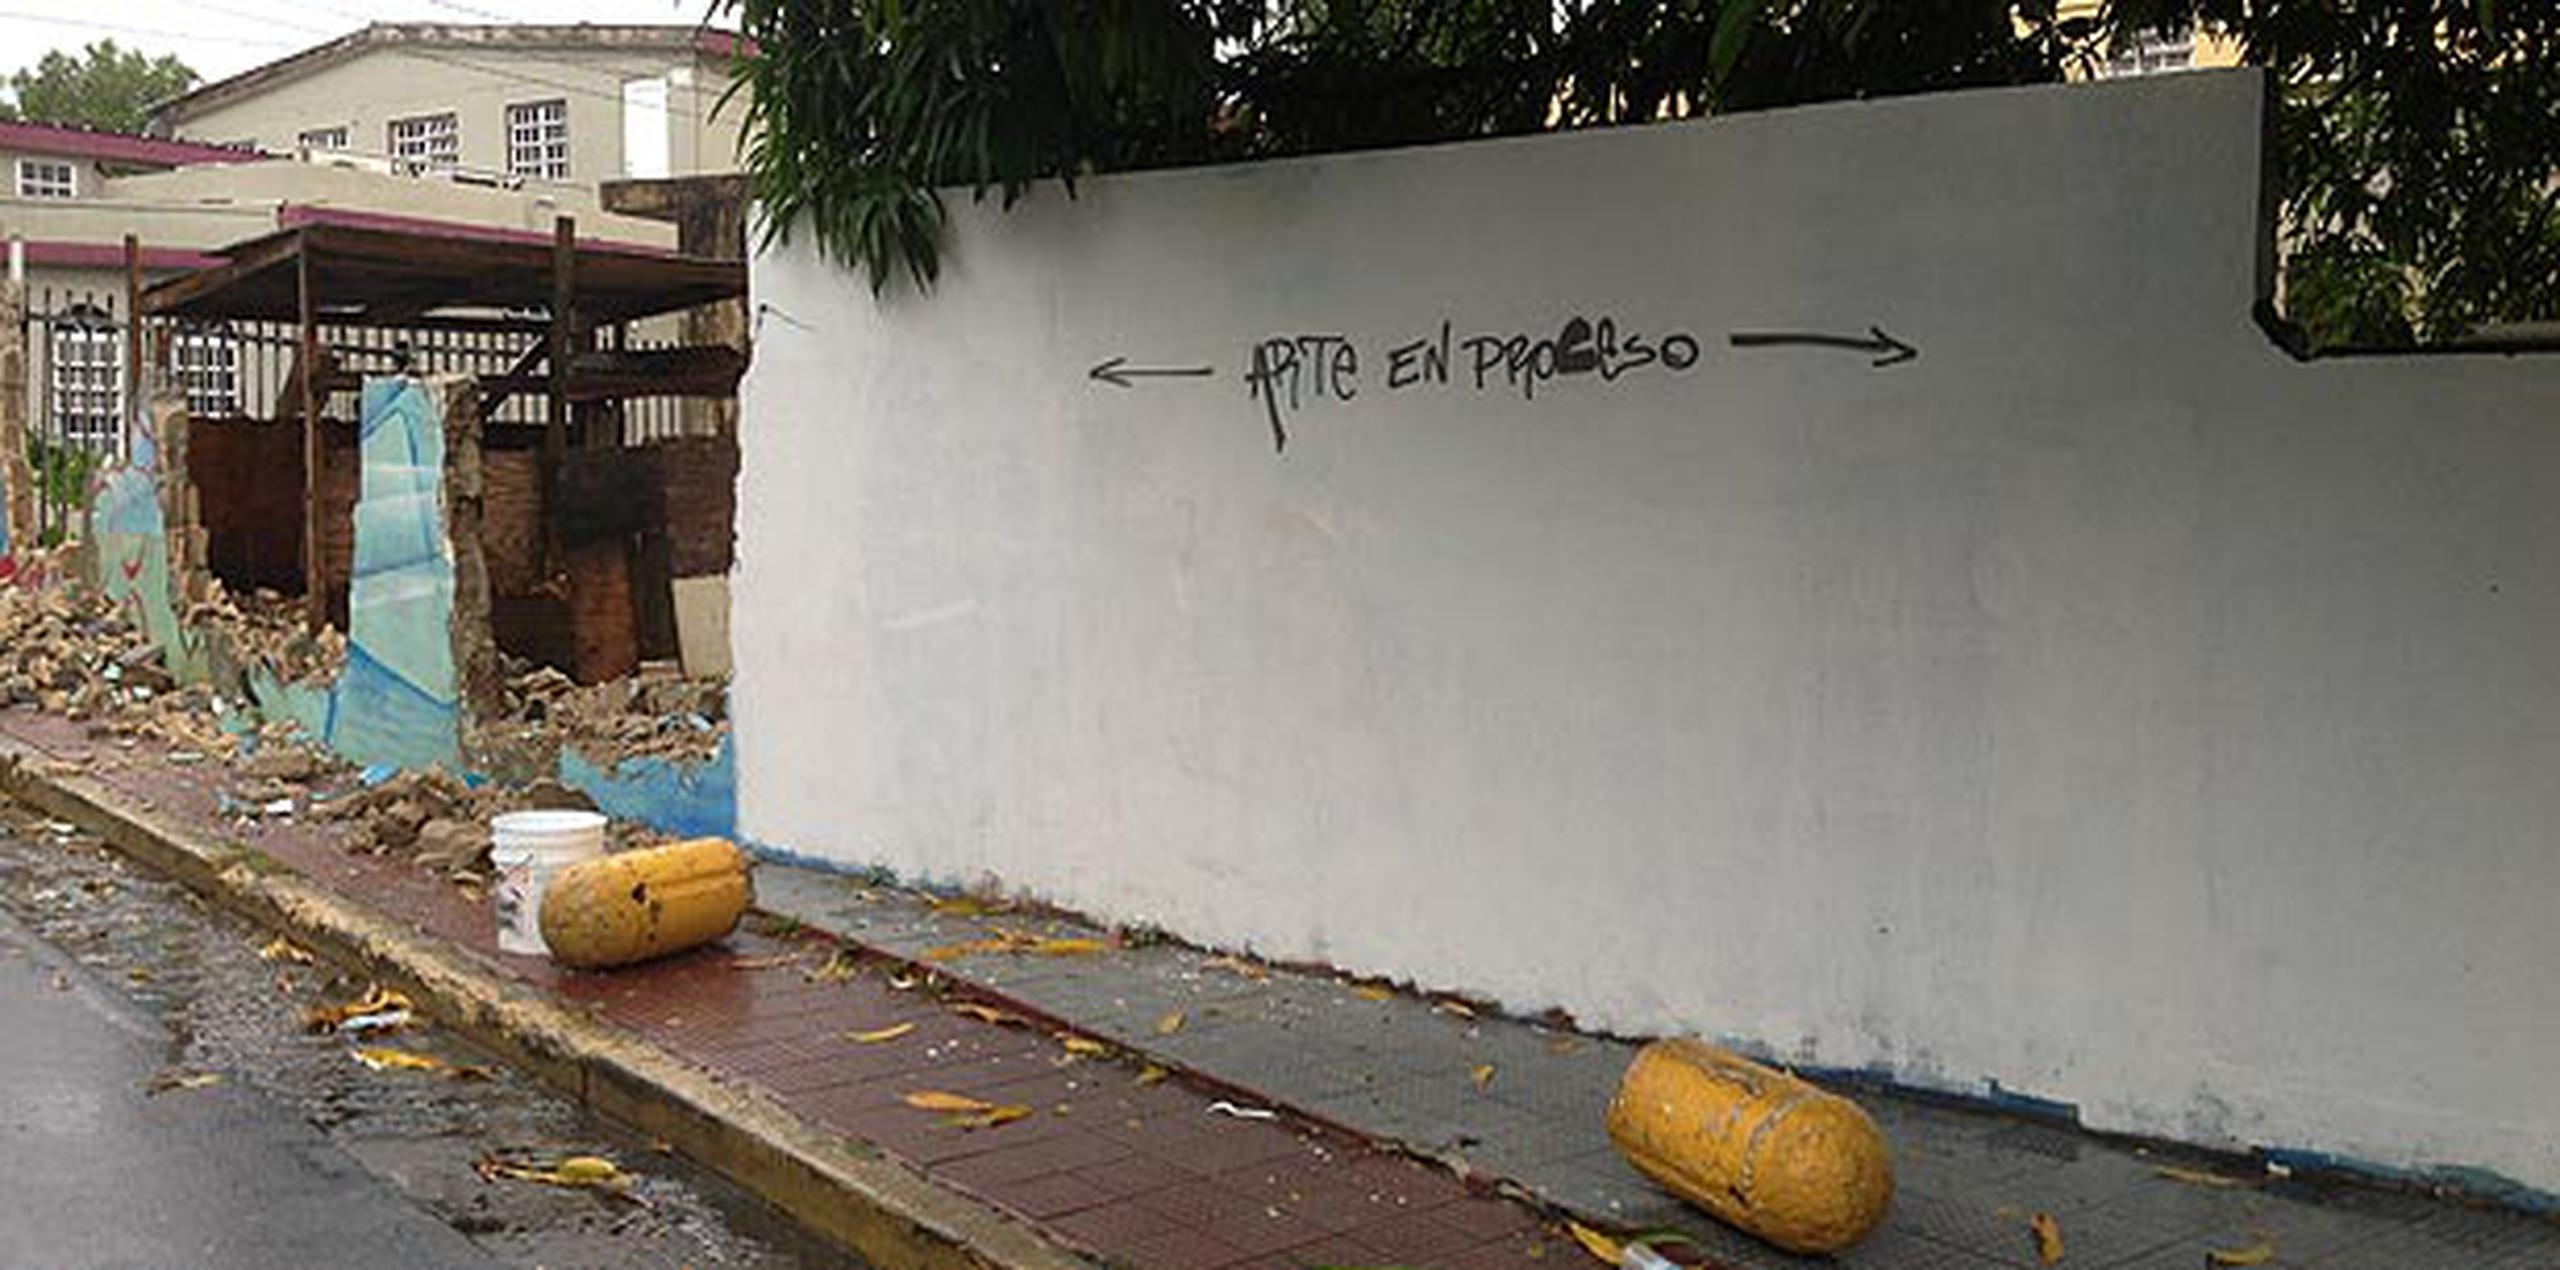 La hermana del llamado Sonero Mayor sostuvo que individuos en la comunidad destruyeron el mural, pintado hace 25 años en la calle que lleva el nombre de su hermano. (angel.rivera@gfrmedia.com)